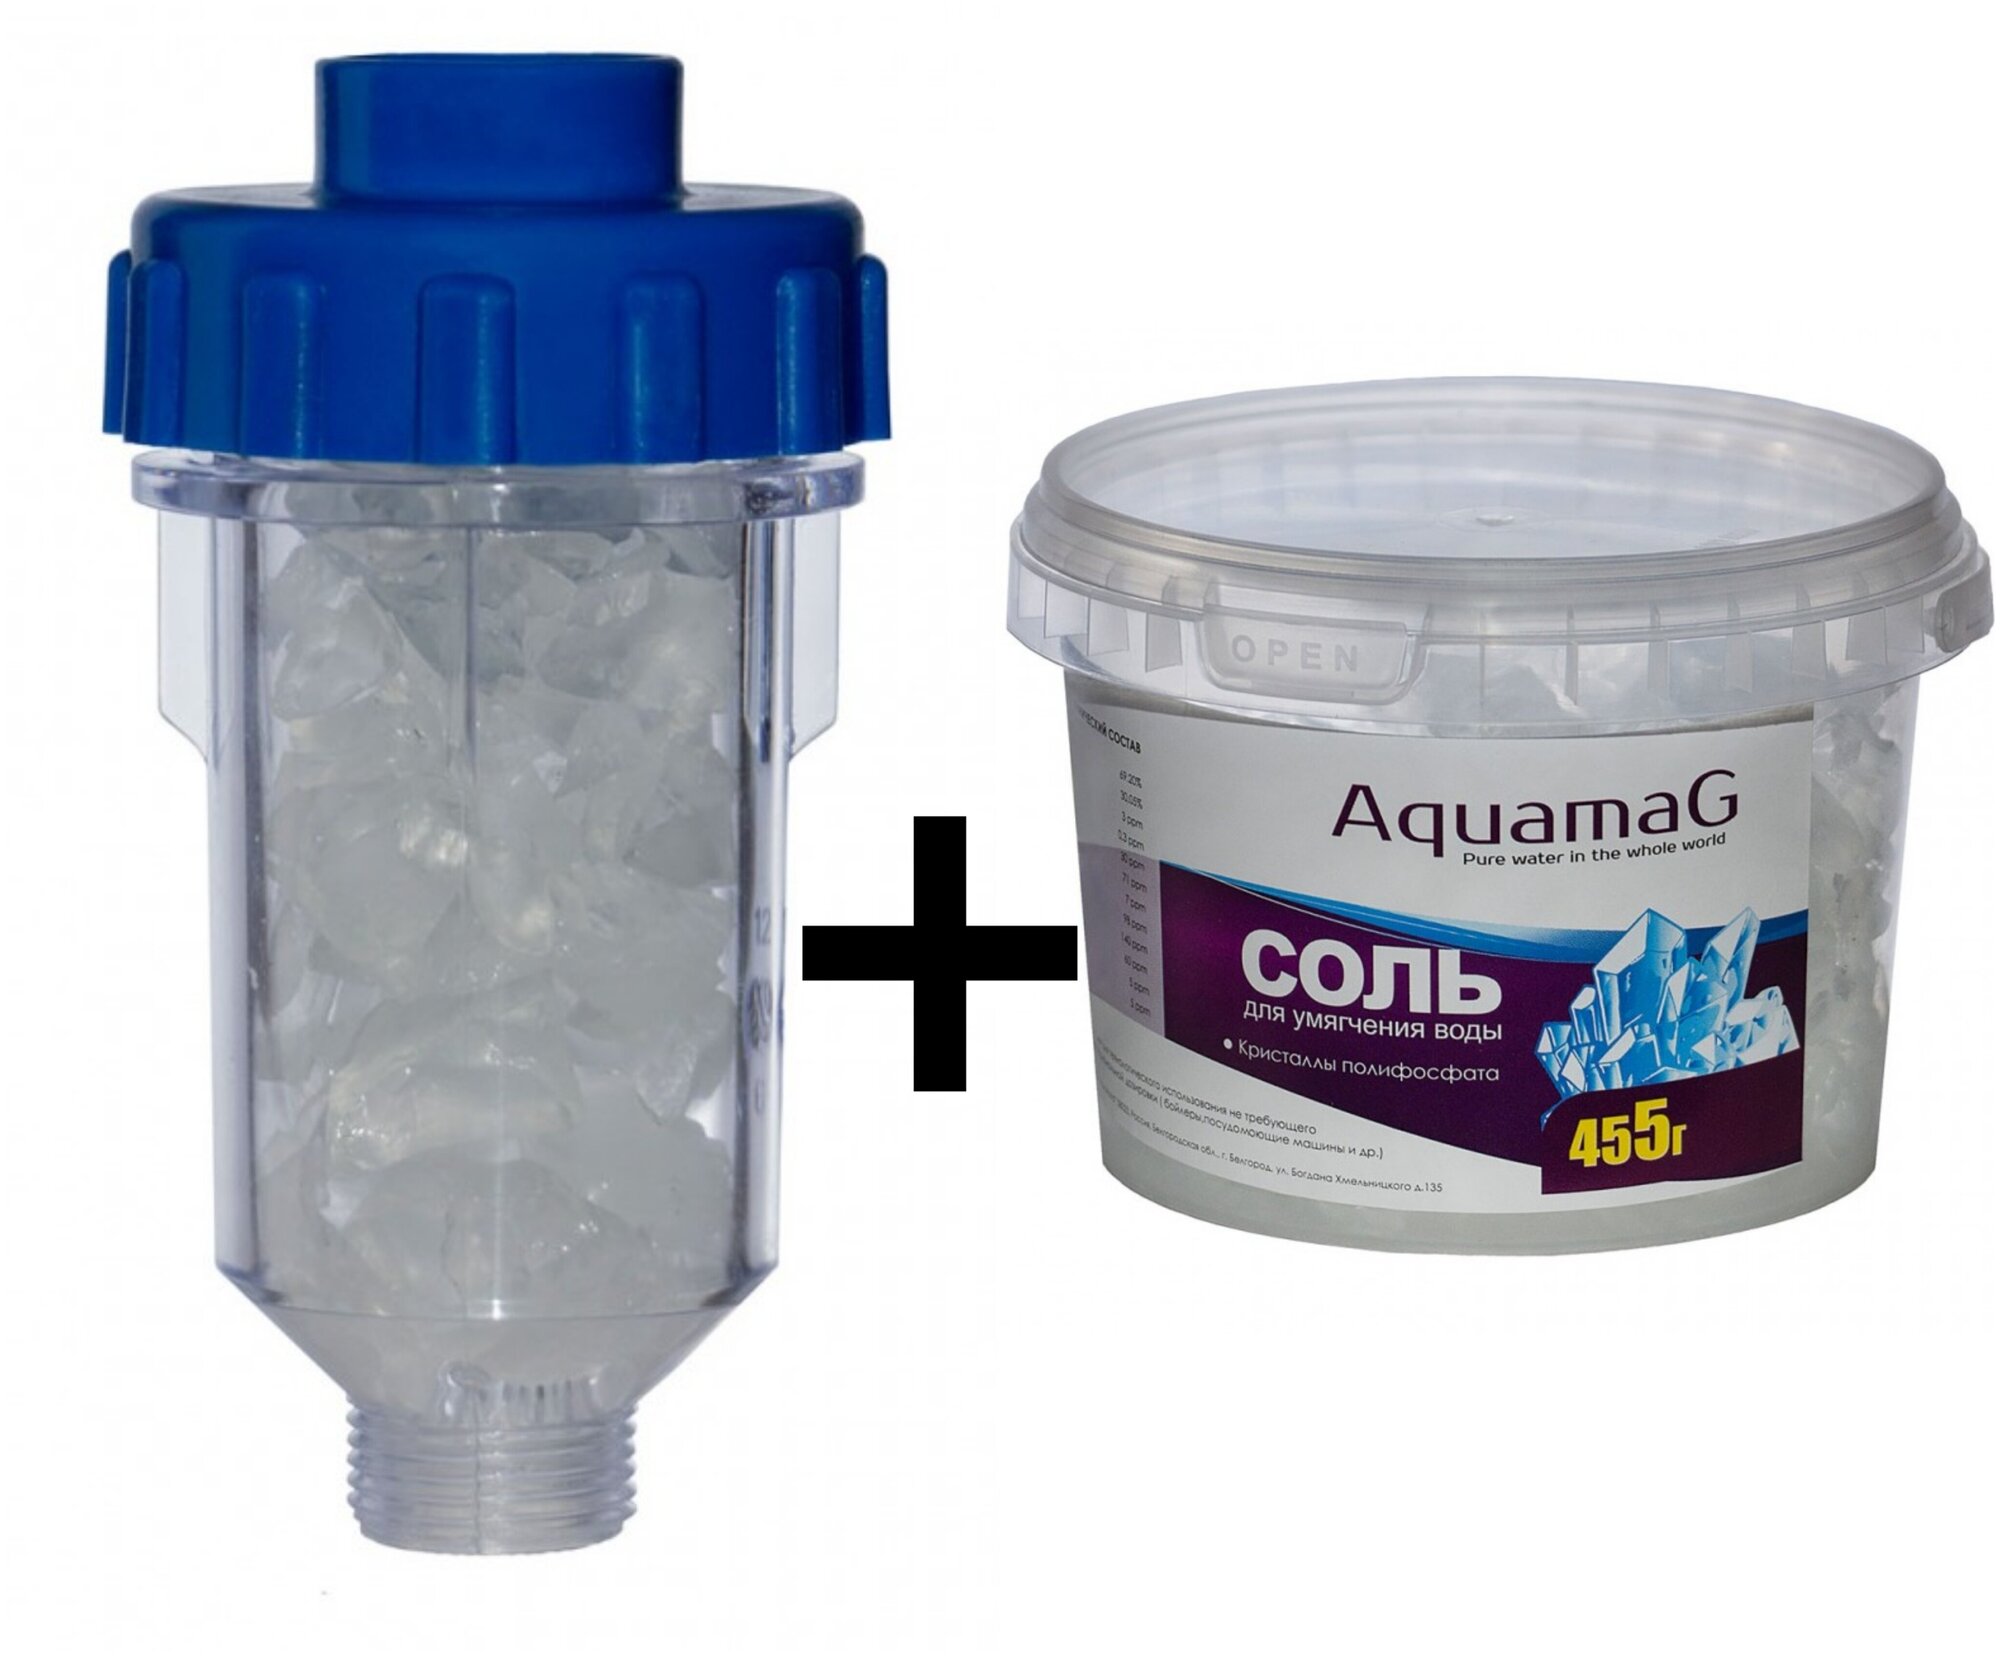 Полифосфатный фильтр (колба, корпус) для стиральной машины + Наполнитель для фильтров, (против накипи). Полифосфатная соль медленнорастворимая 455 г.